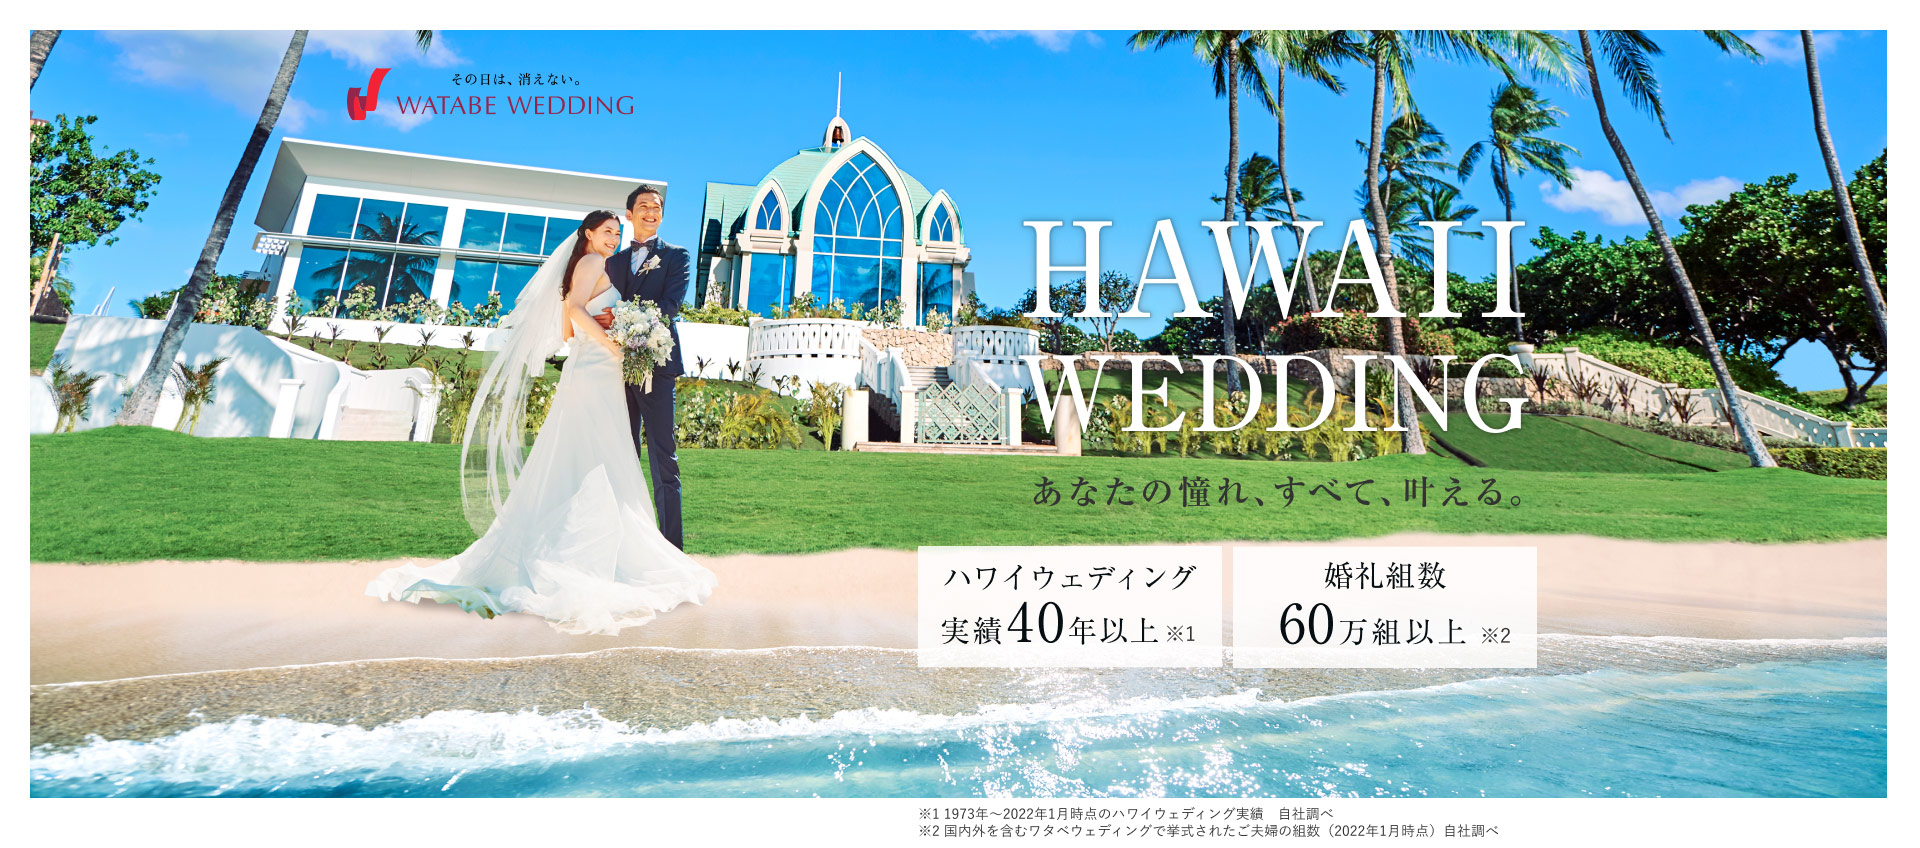 写真:HAWAII WEDDING あなたの憧れ、全て、叶える